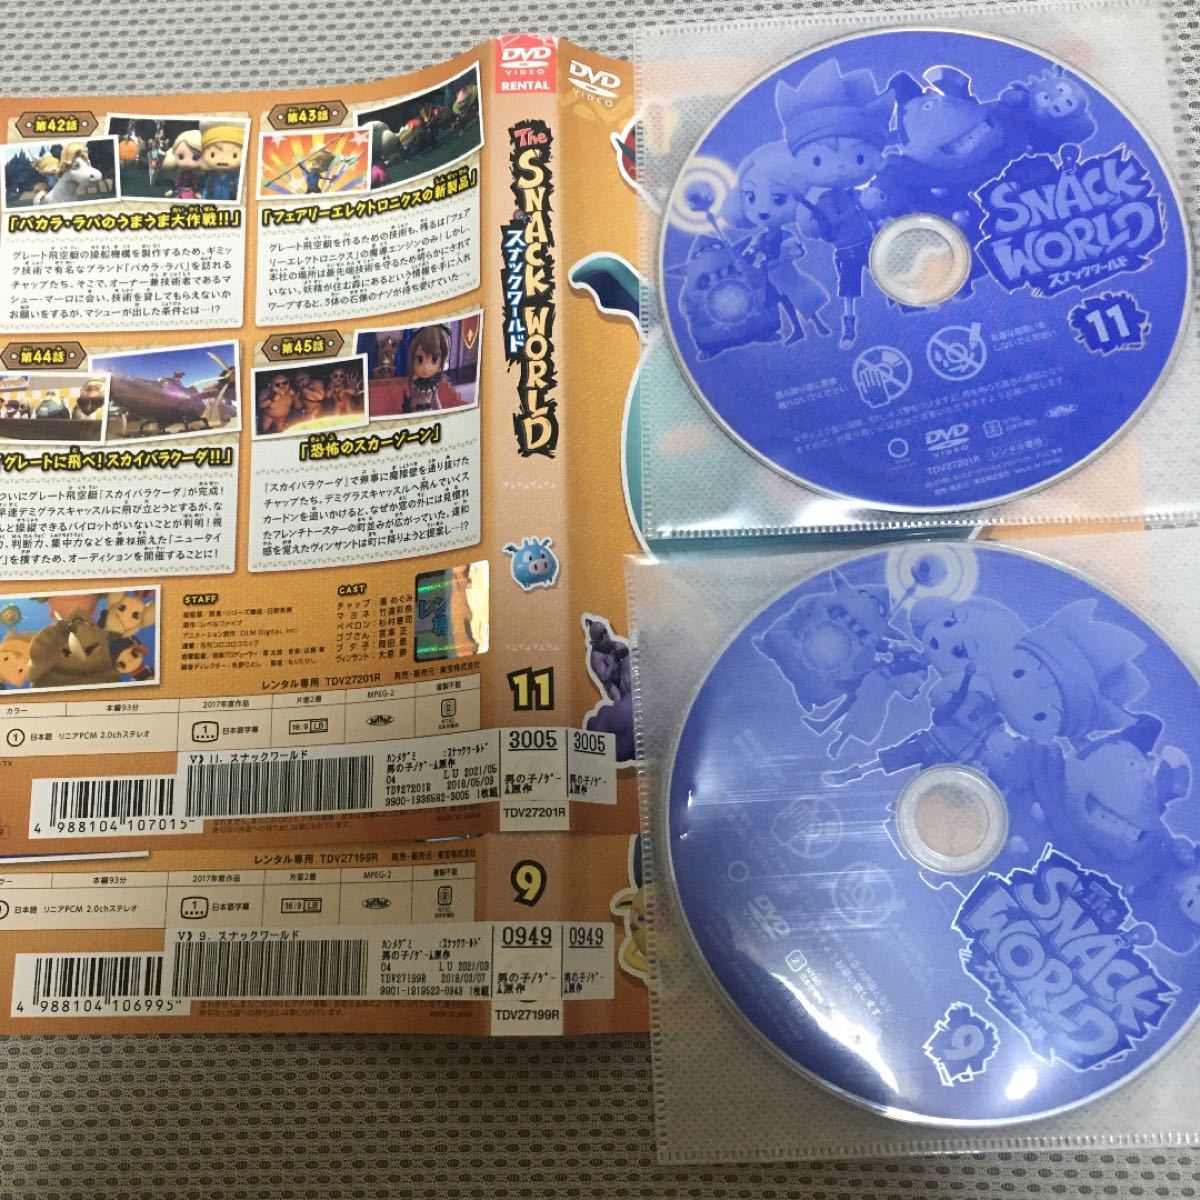 スナックワールド DVD Vol.1 〜 Vol.12 全12巻セット